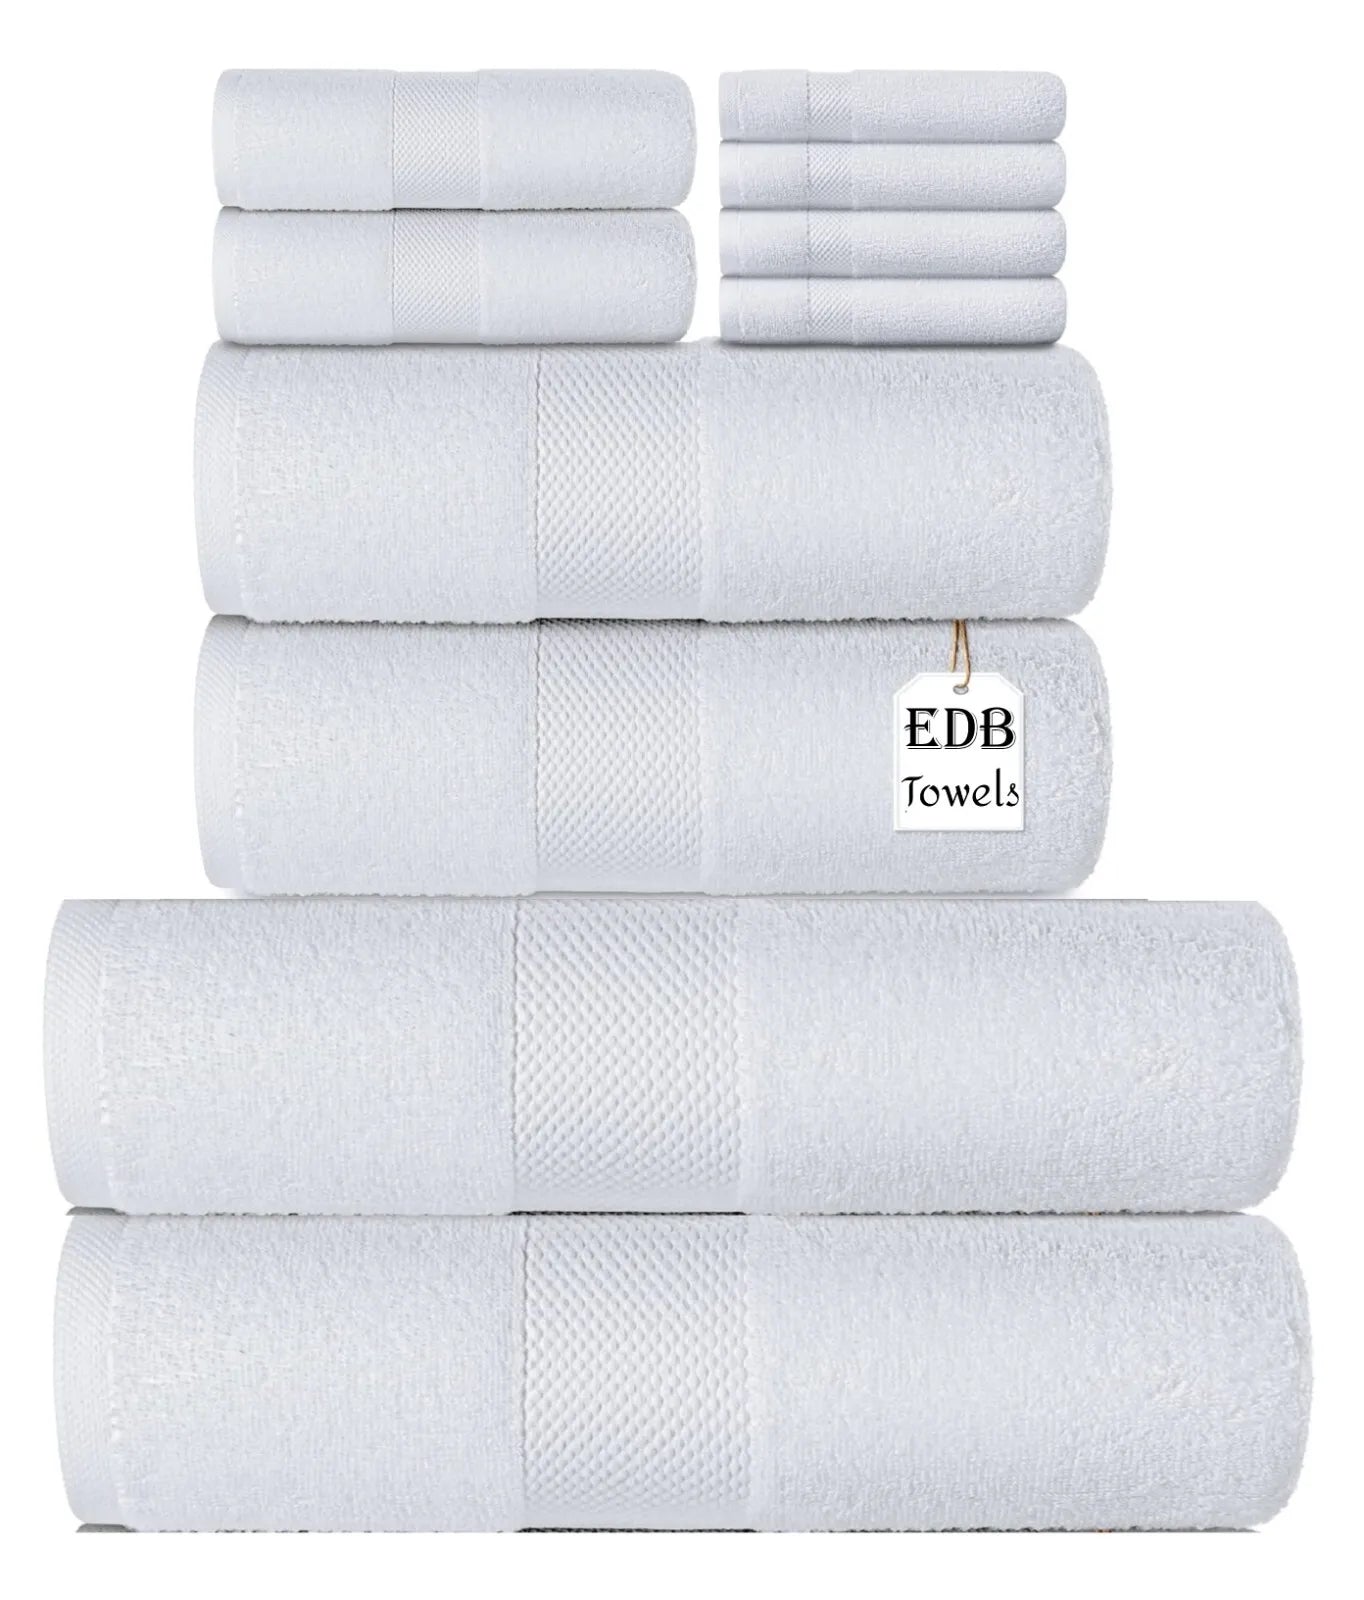 Egyptian Cotton 8 Piece Bale Set 800GSM - 4 Face Cloths, 2 Hand Towel, 2 Bath Towel